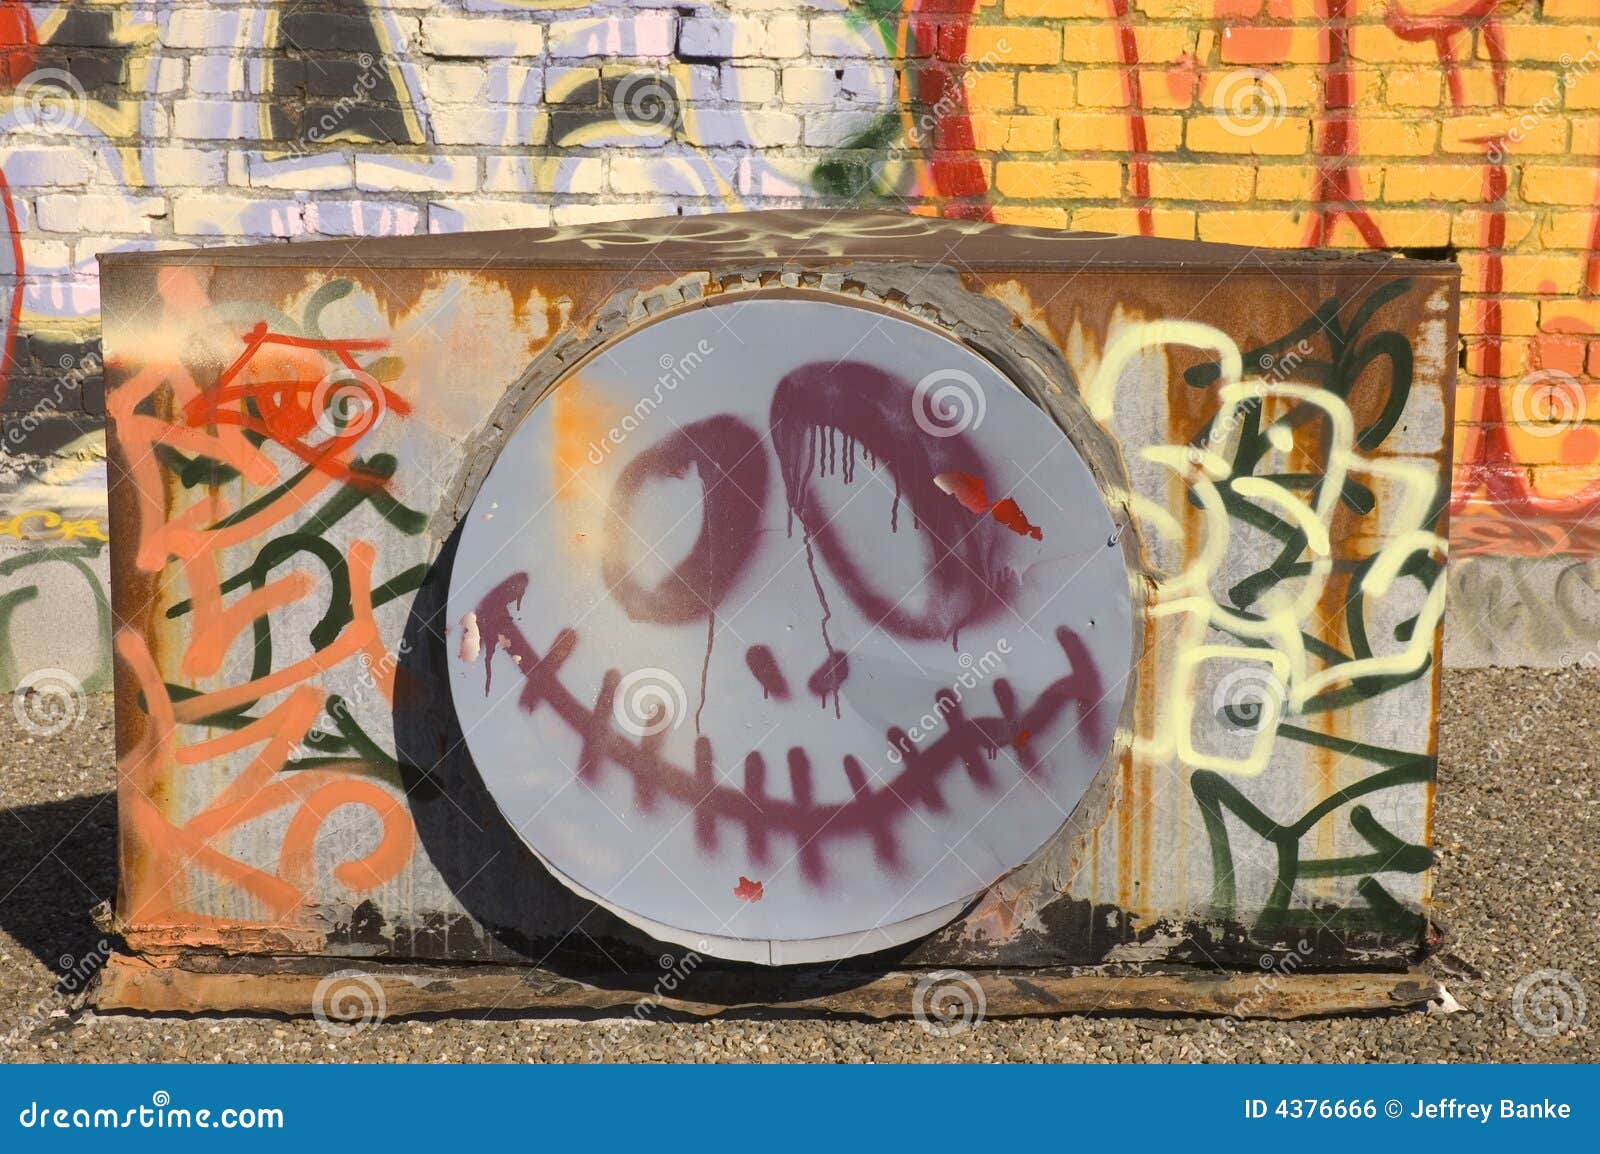 smily face graffitti